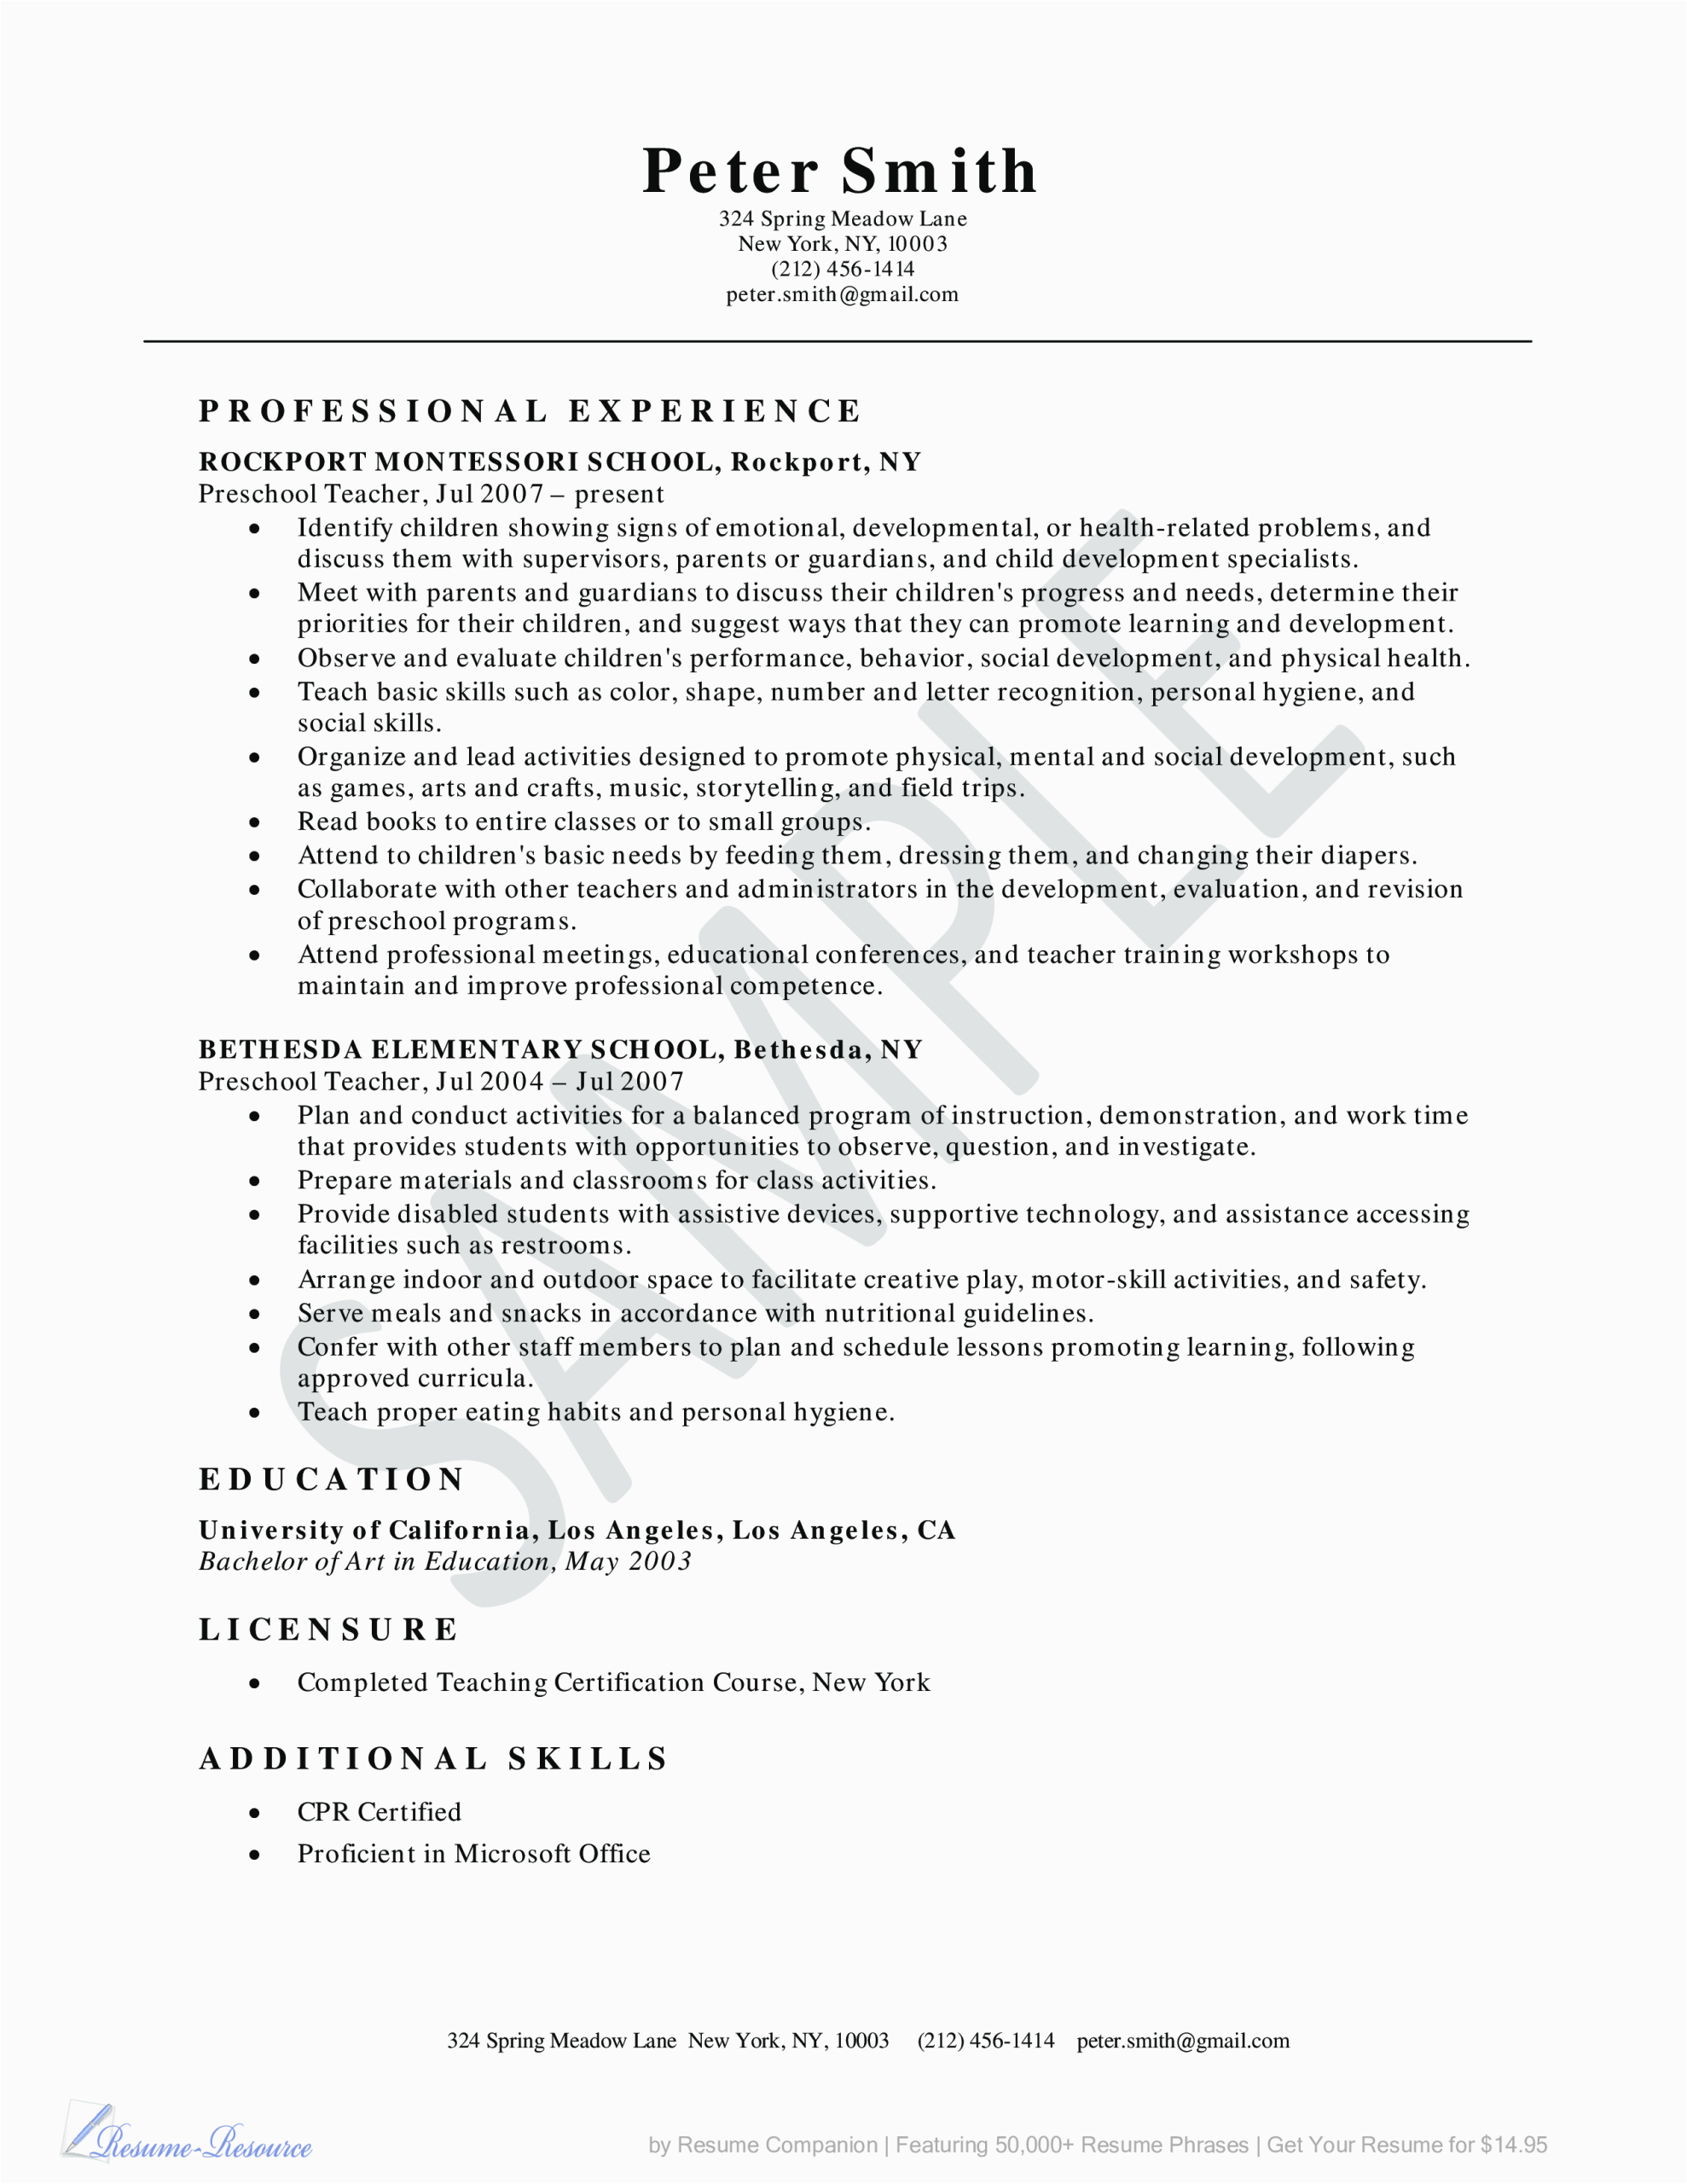 Sample Resume for Teachers for Preschool Preschool Teacher Resume Example